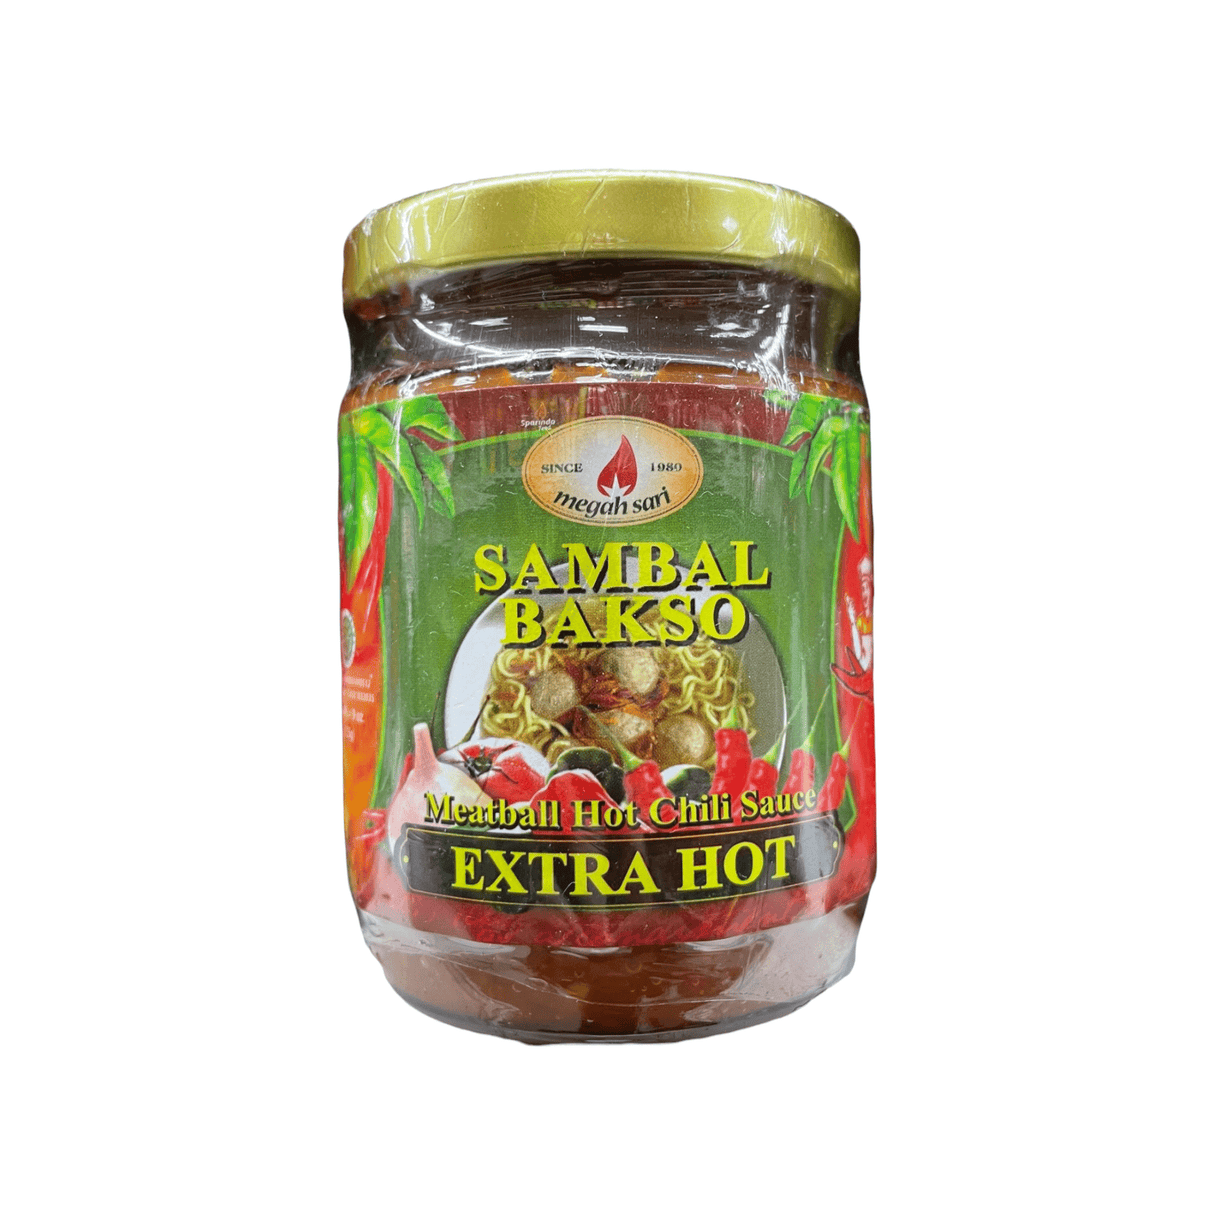 Megah Sari Sambal Bakso Meatball Hot Chili Sauce Extra Hot